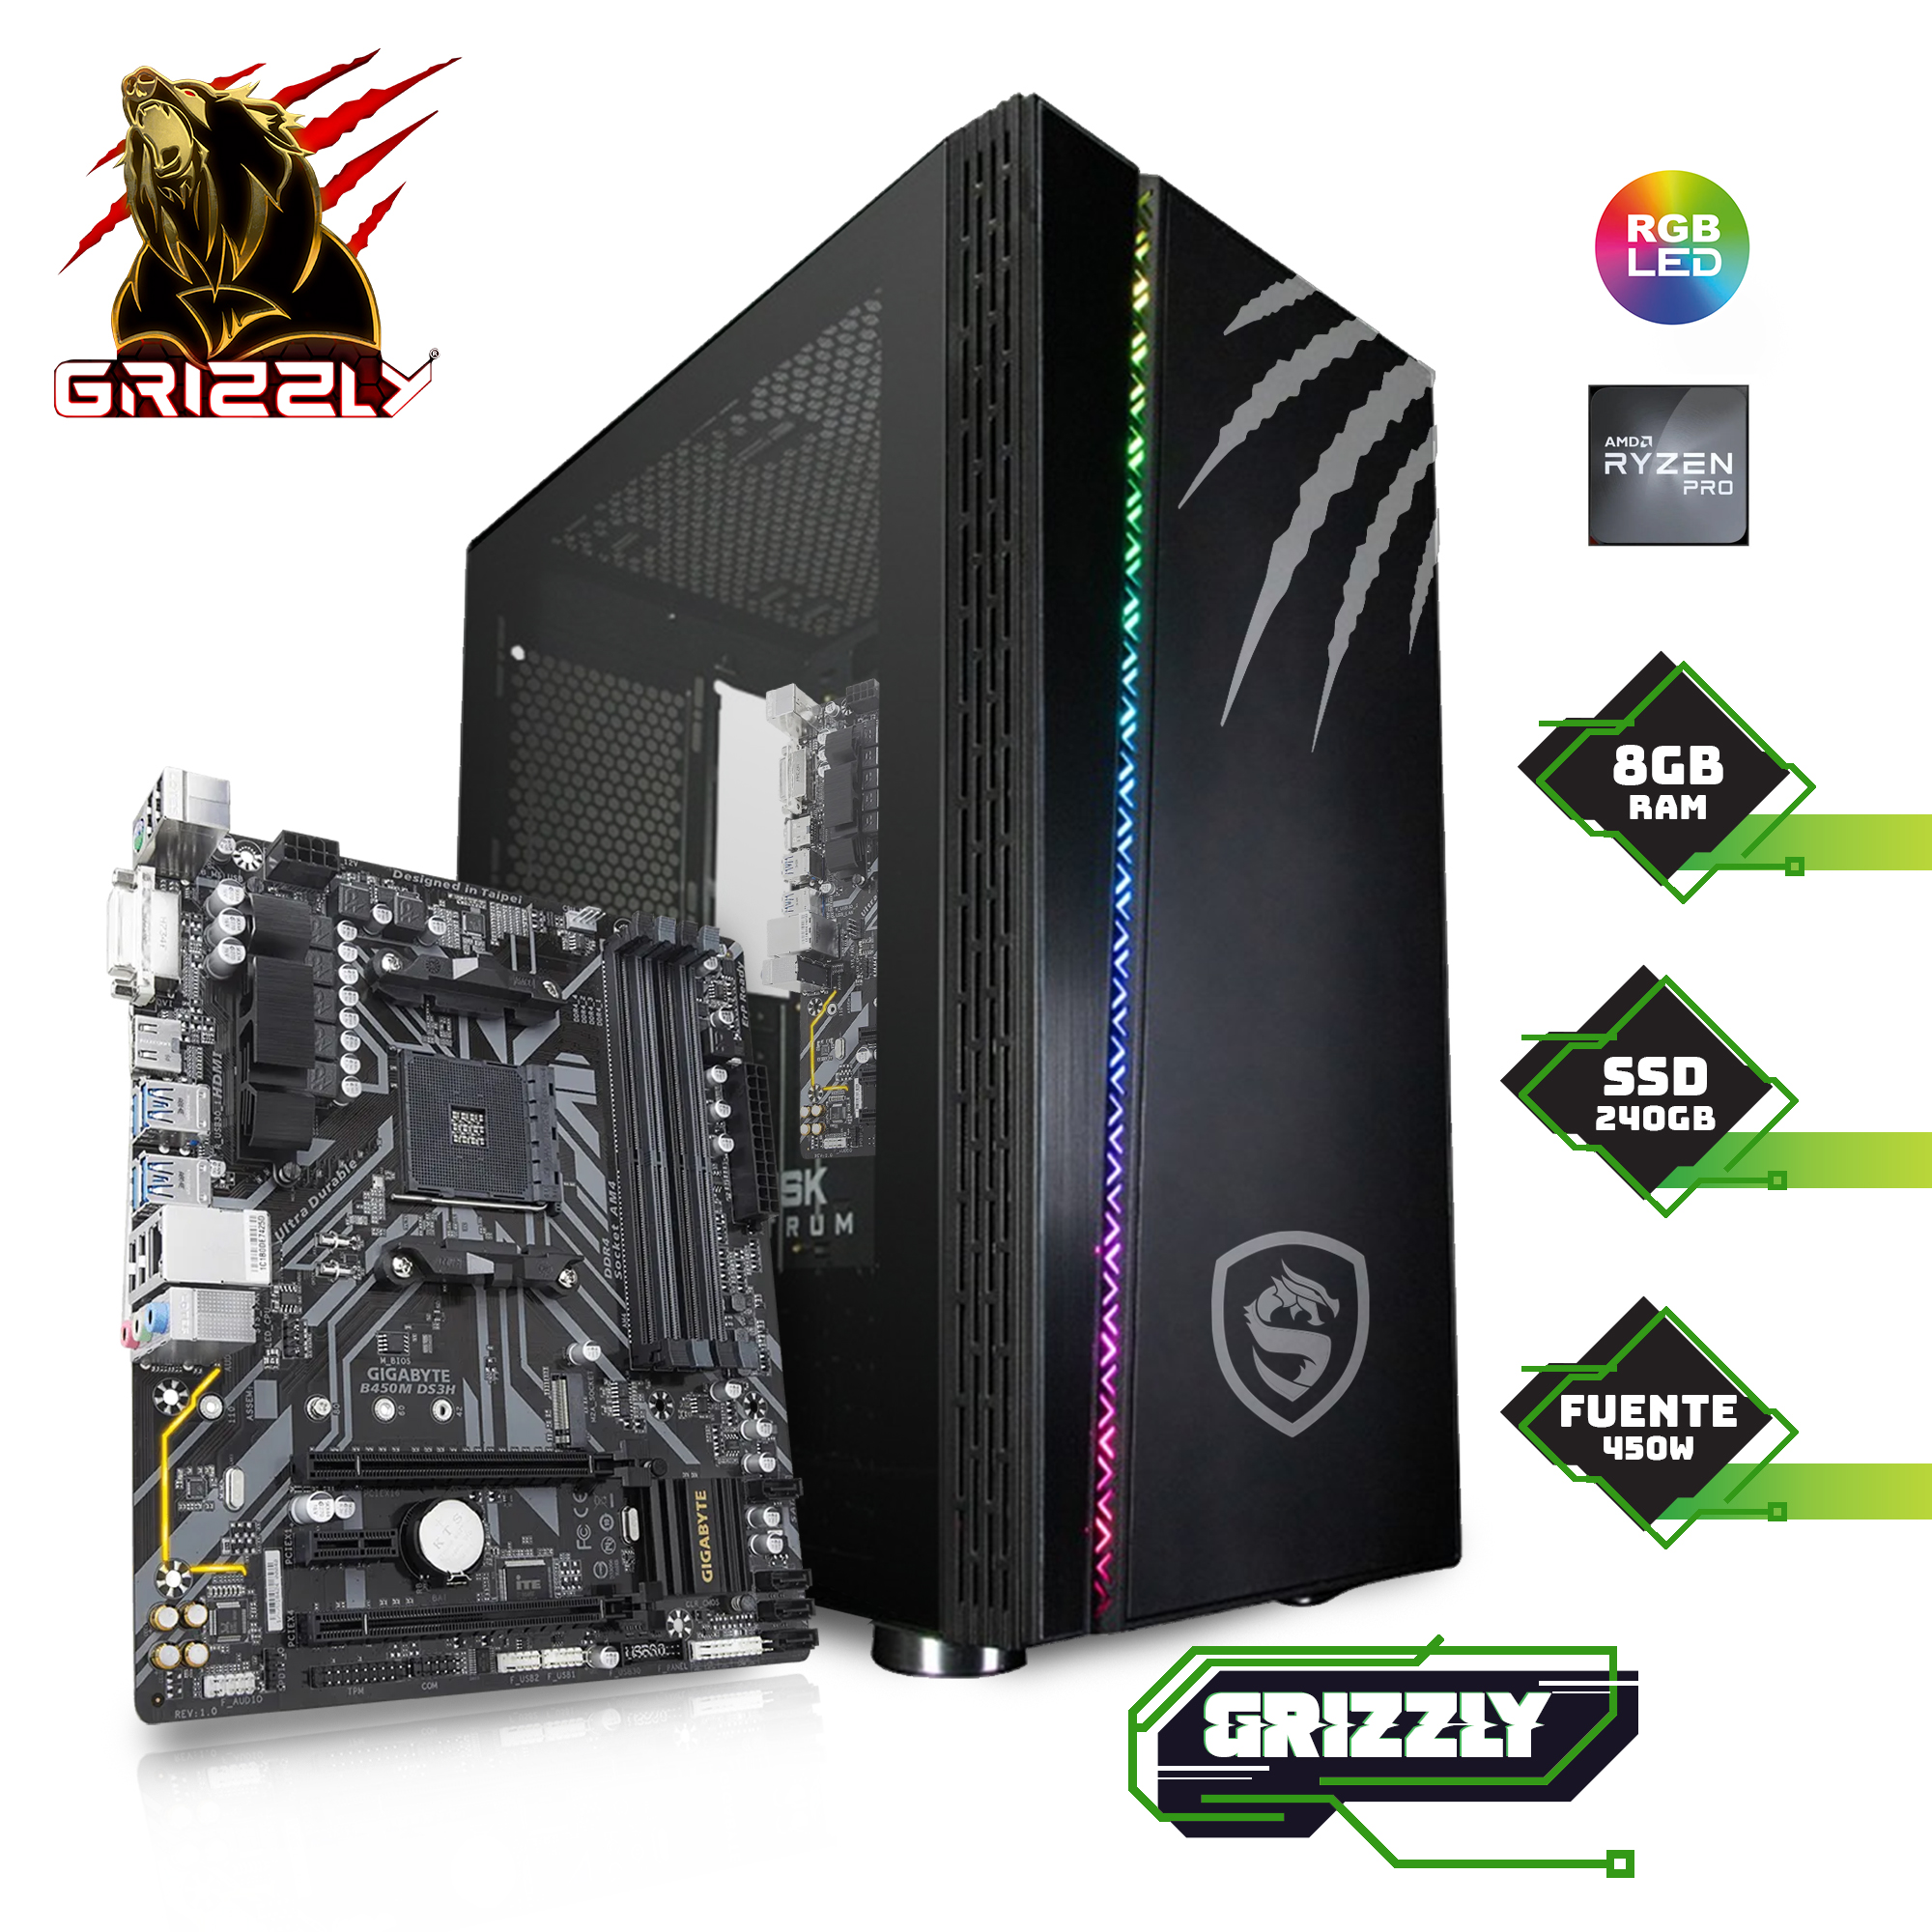 Pc Gamer Grizzly Ryzen 3 Pro 4350G 3.8Ghz Ram 8Gb Ssd 240Gb 450W Bronze